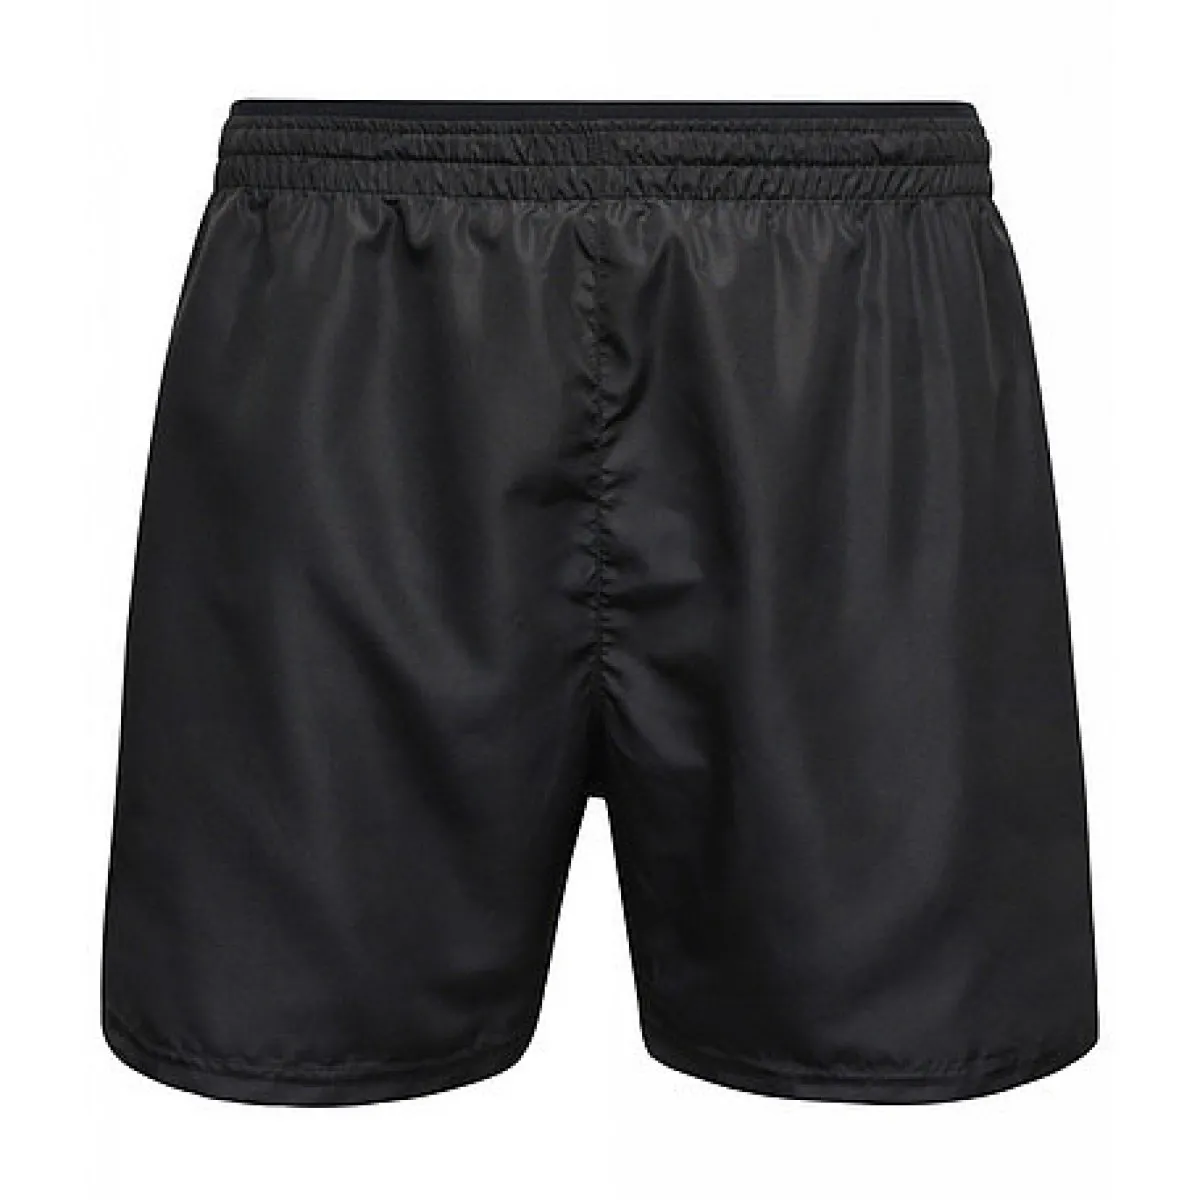 black printed shorts